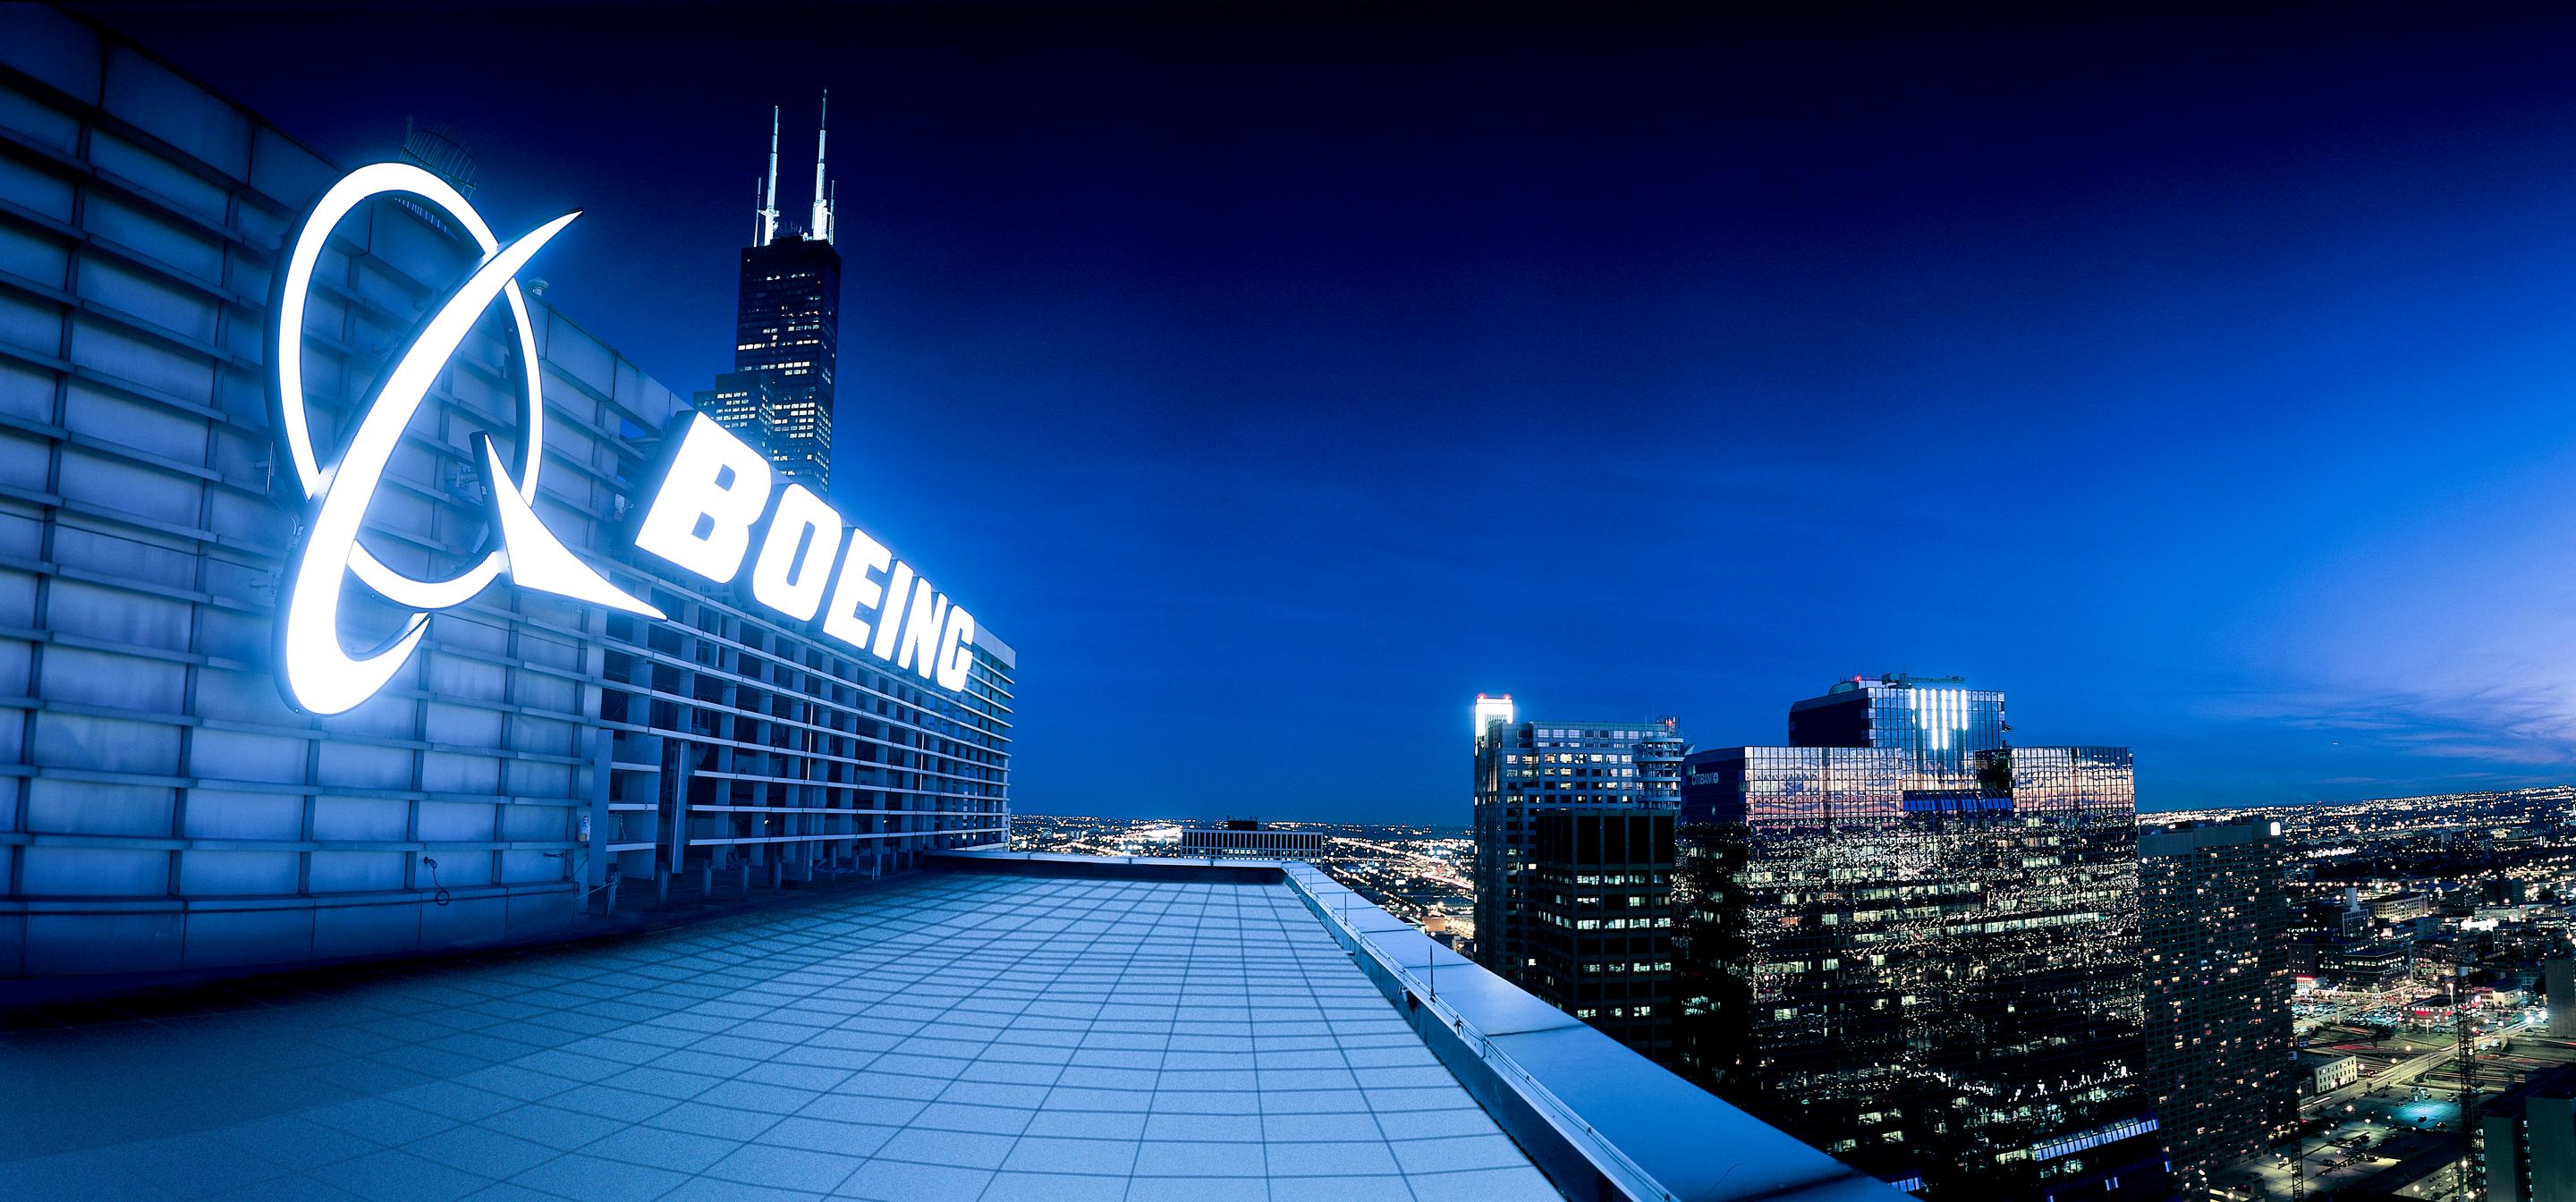 Kompanija "Boeing" odlučila uplatiti 100 miliona dolara porodicama nastradalih u dvije avionske nesreće